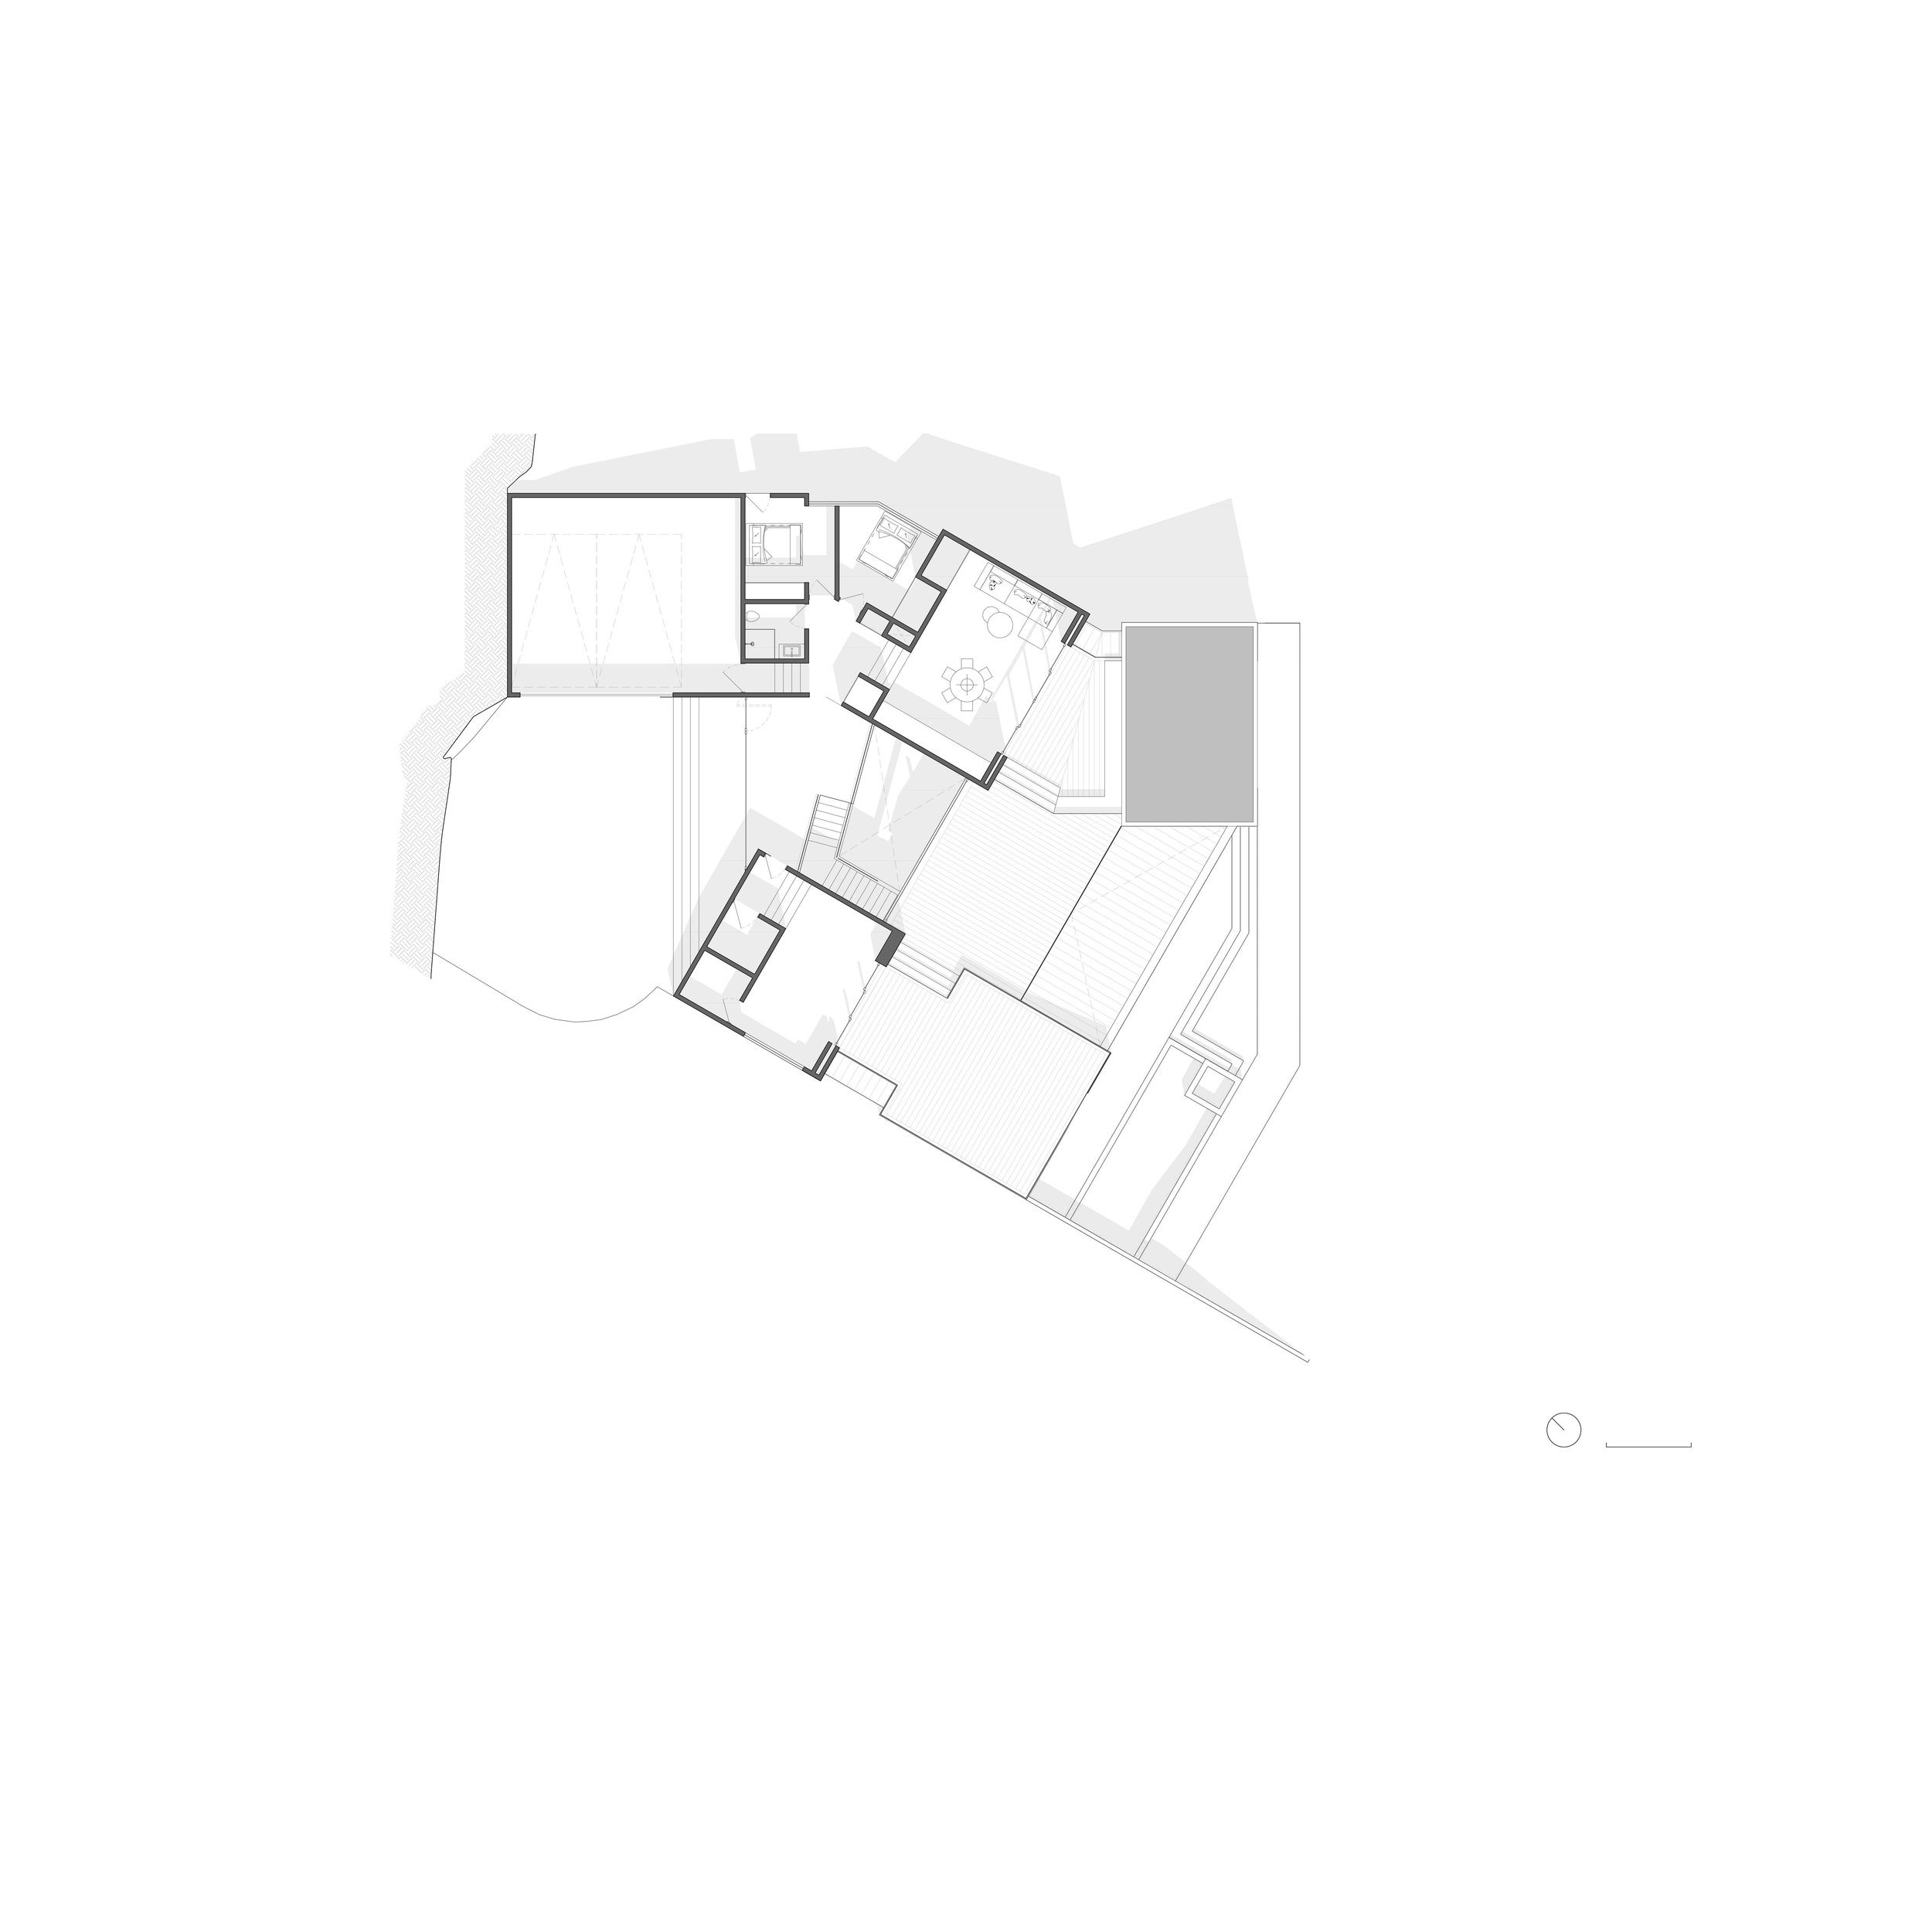 VML_Publications - 01 Third Floor Plan.jpg